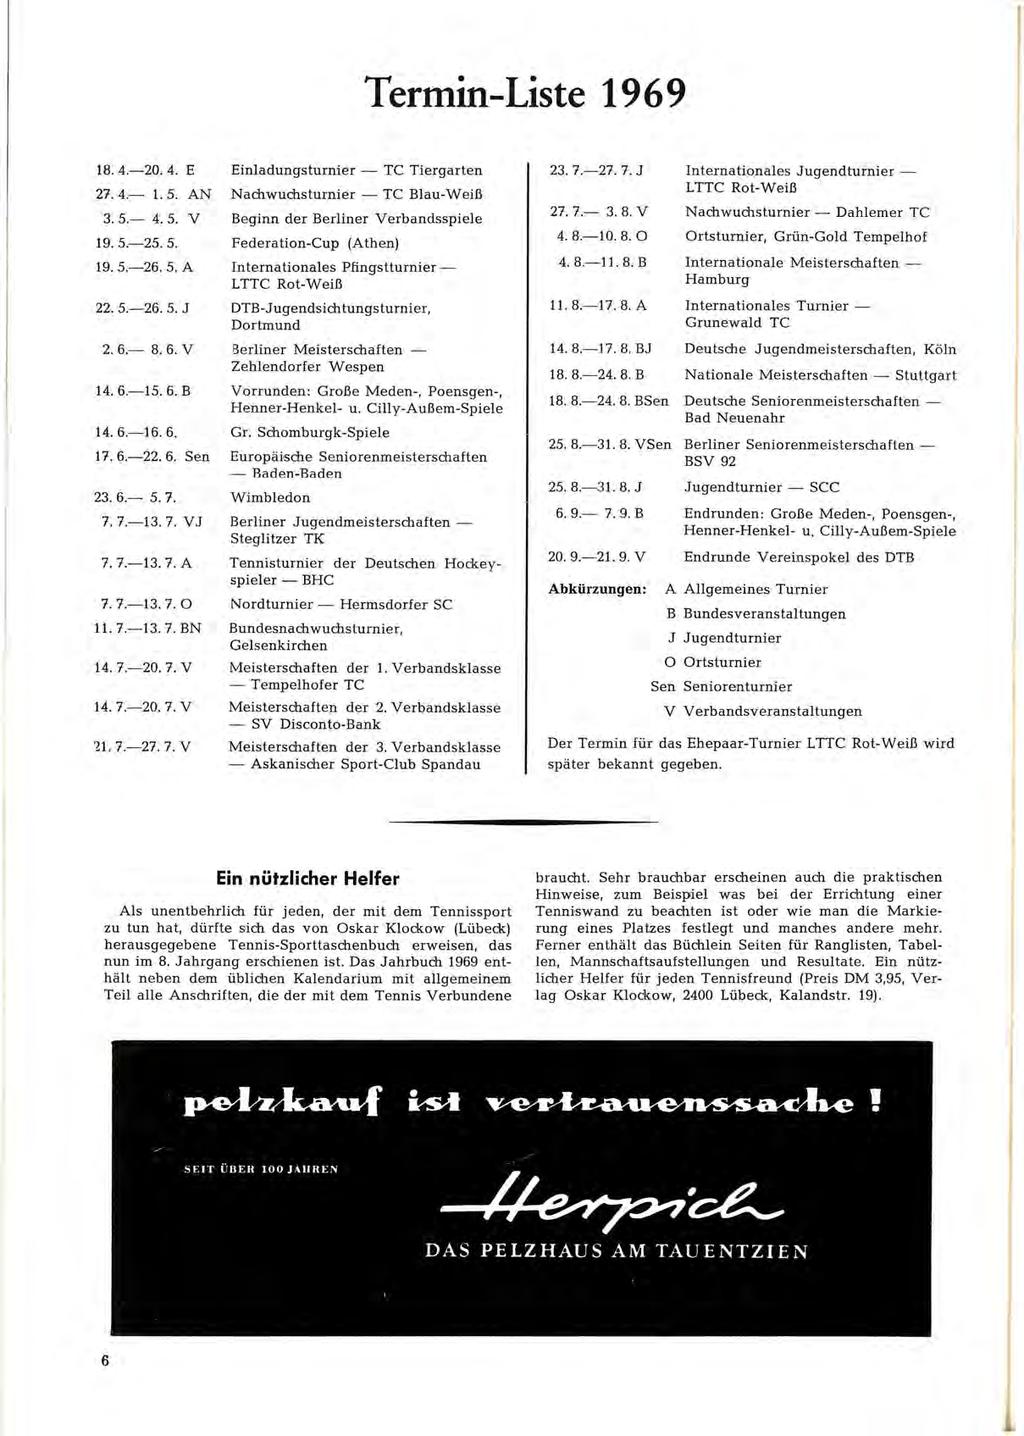 Termin-Liste 1969 18. 4.-20. 4. E Einladungsturnier - TC Tiergarten 27. 4.- 1. 5. AN Nachwuchsturnier-TC Blau-Weiß 3. 5.- 4. 5. V Beginn der Berliner Verbandsspiele 19. 5.-25. 5. Federation-Cup (Athen) 19.